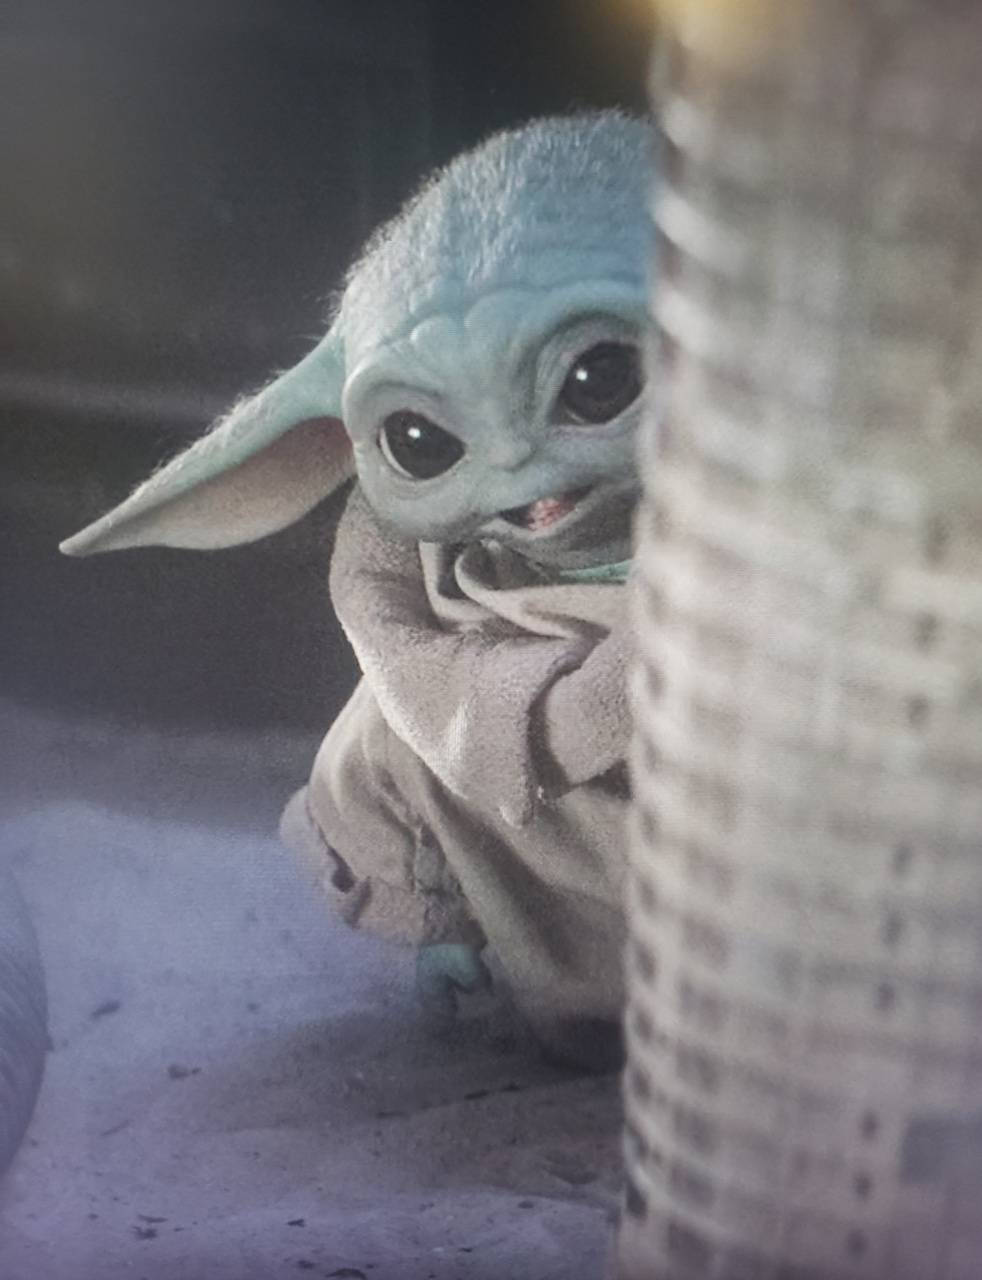 Little Baby Yoda